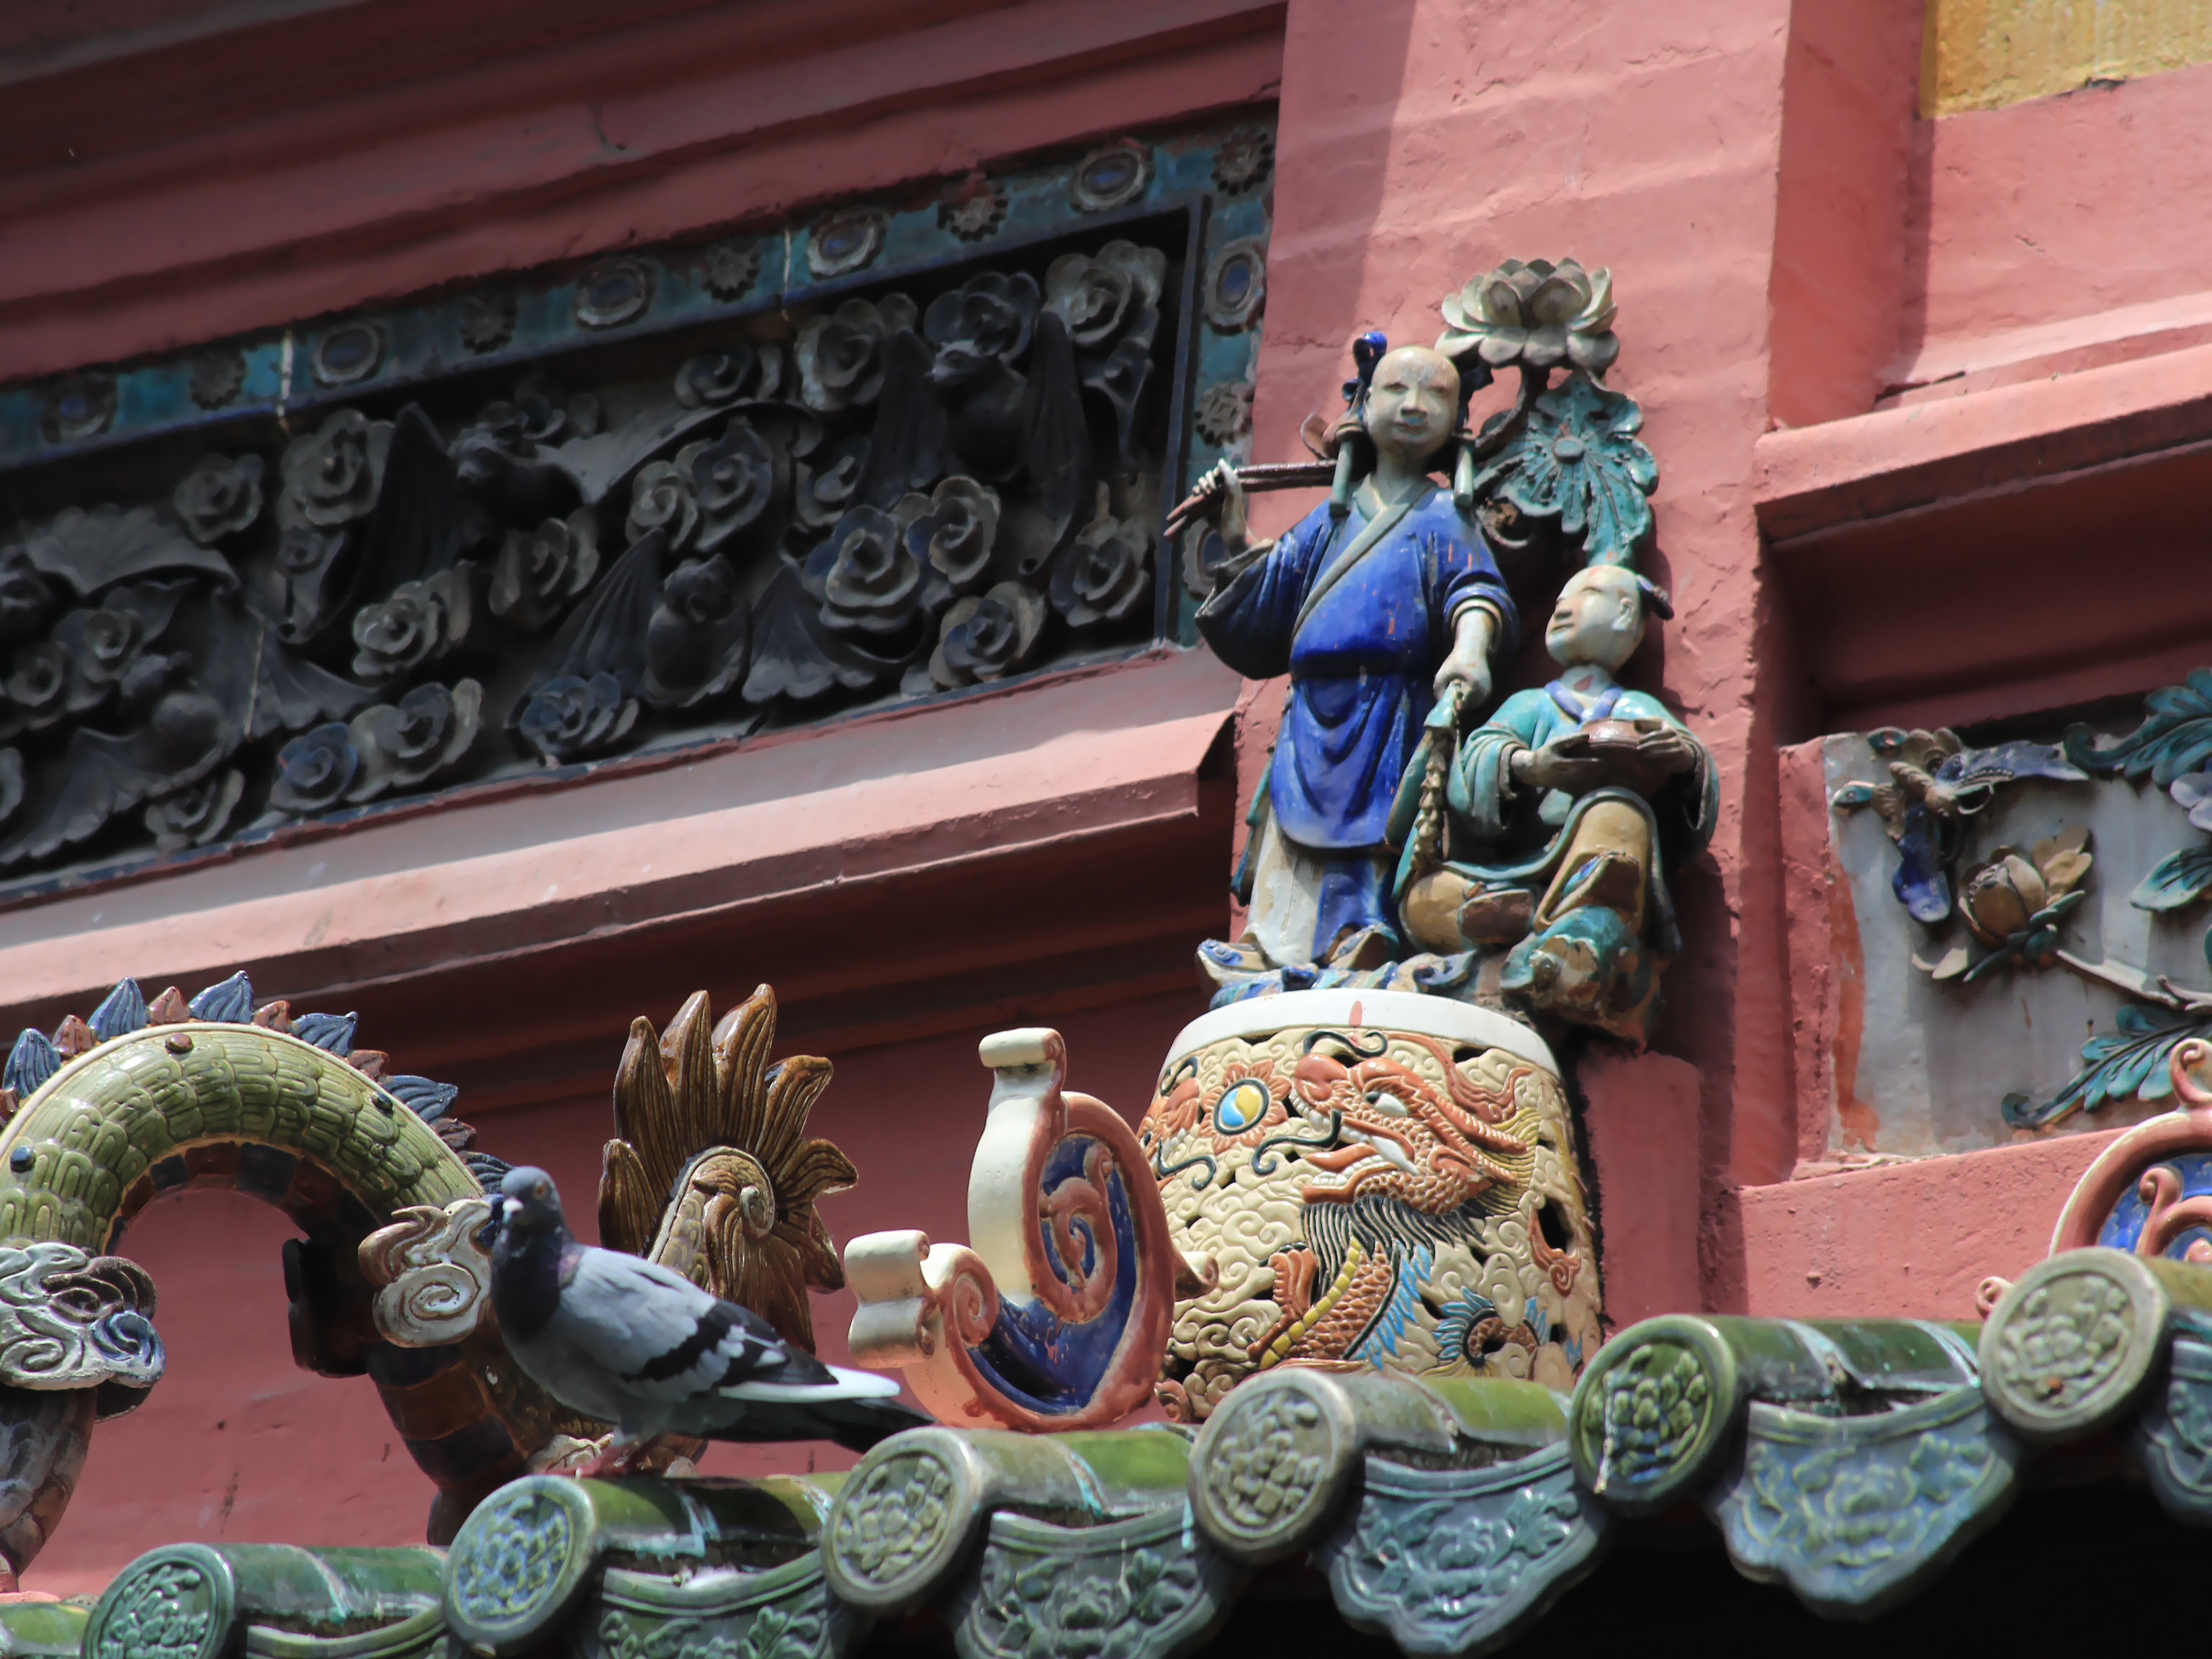 Các chi tiết hoa văn ở mái chùa được làm tỉ mỉ, nhiều họa tiết nhỏ, cầu kỳ